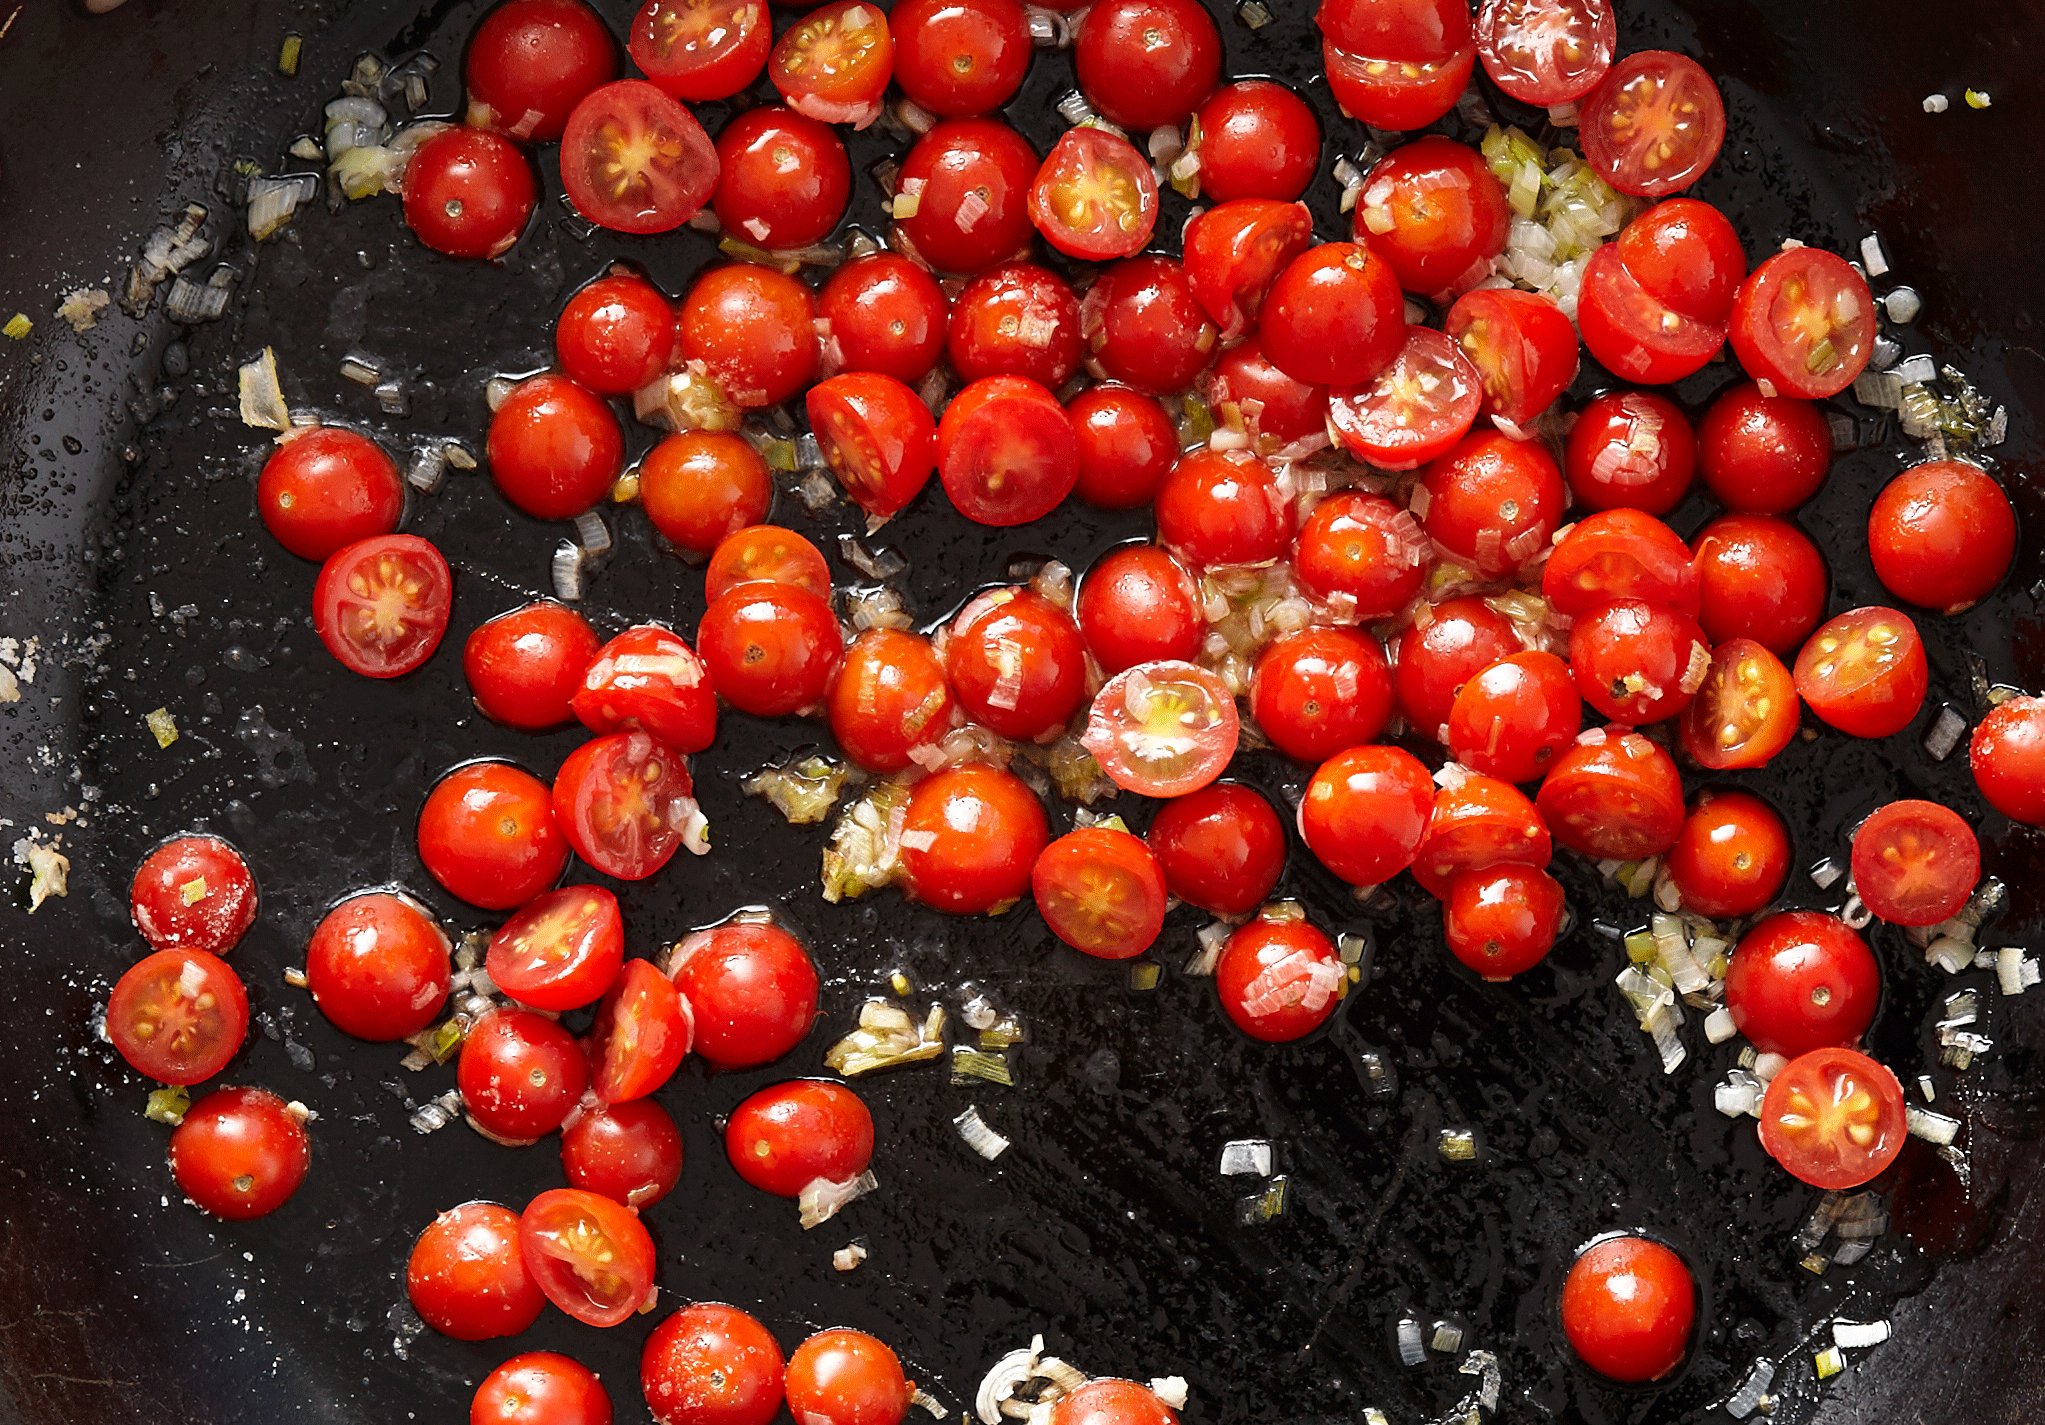 tomatoscheery-grilled